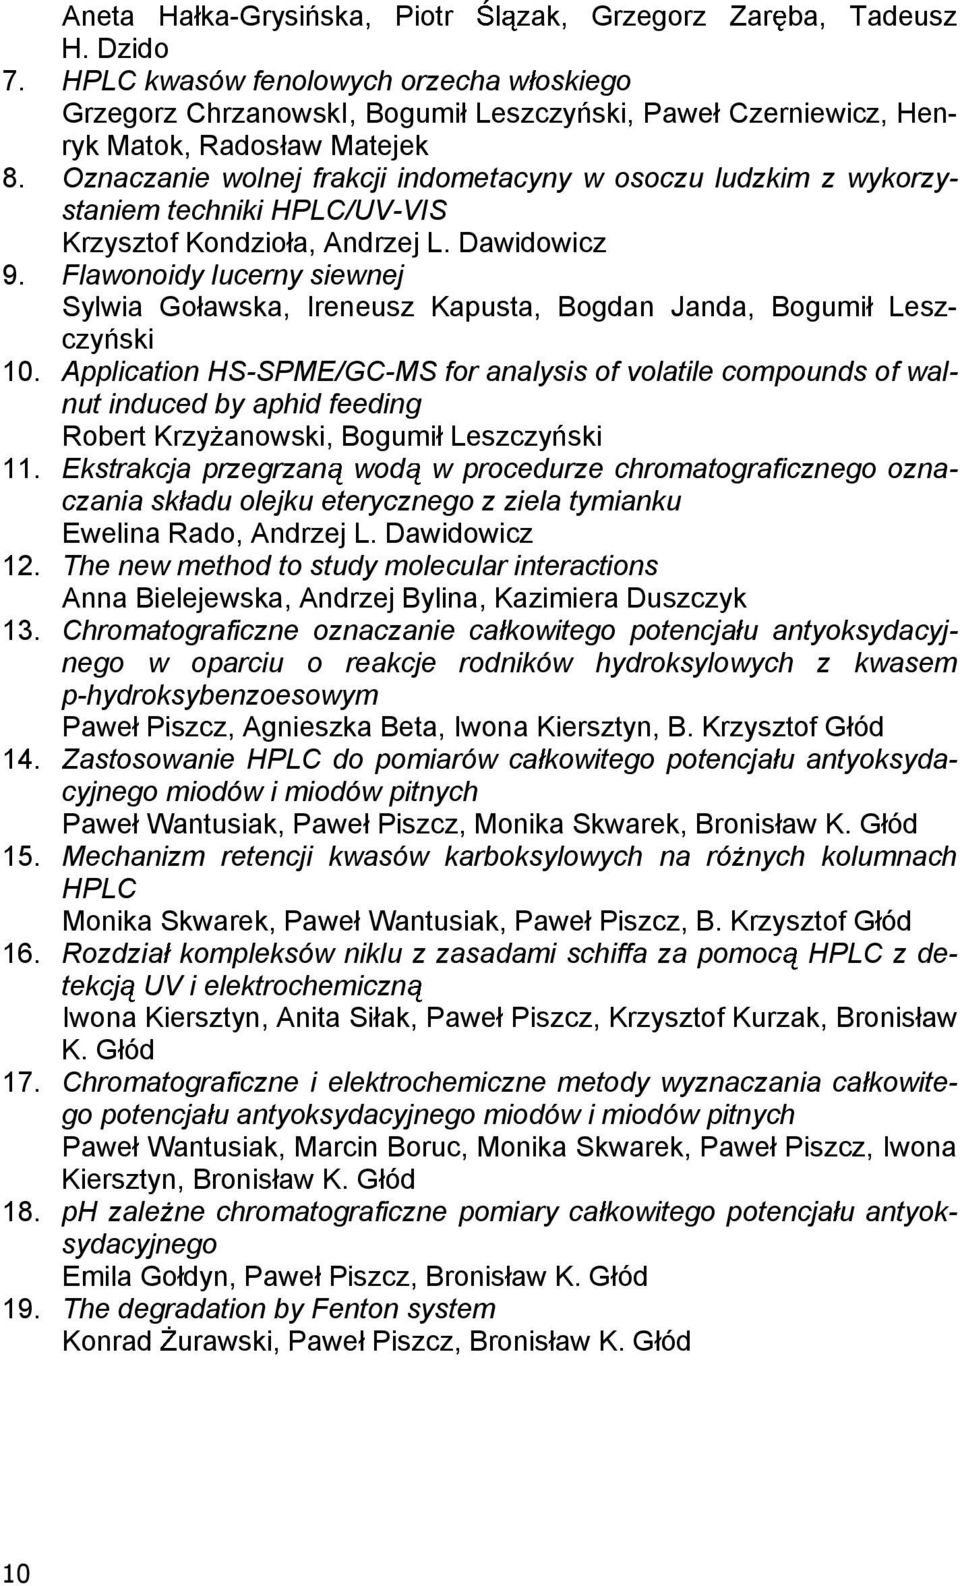 Oznaczanie wolnej frakcji indometacyny w osoczu ludzkim z wykorzystaniem techniki HPLC/UV-VIS Krzysztof Kondzio a, Andrzej L. Dawidowicz 9.